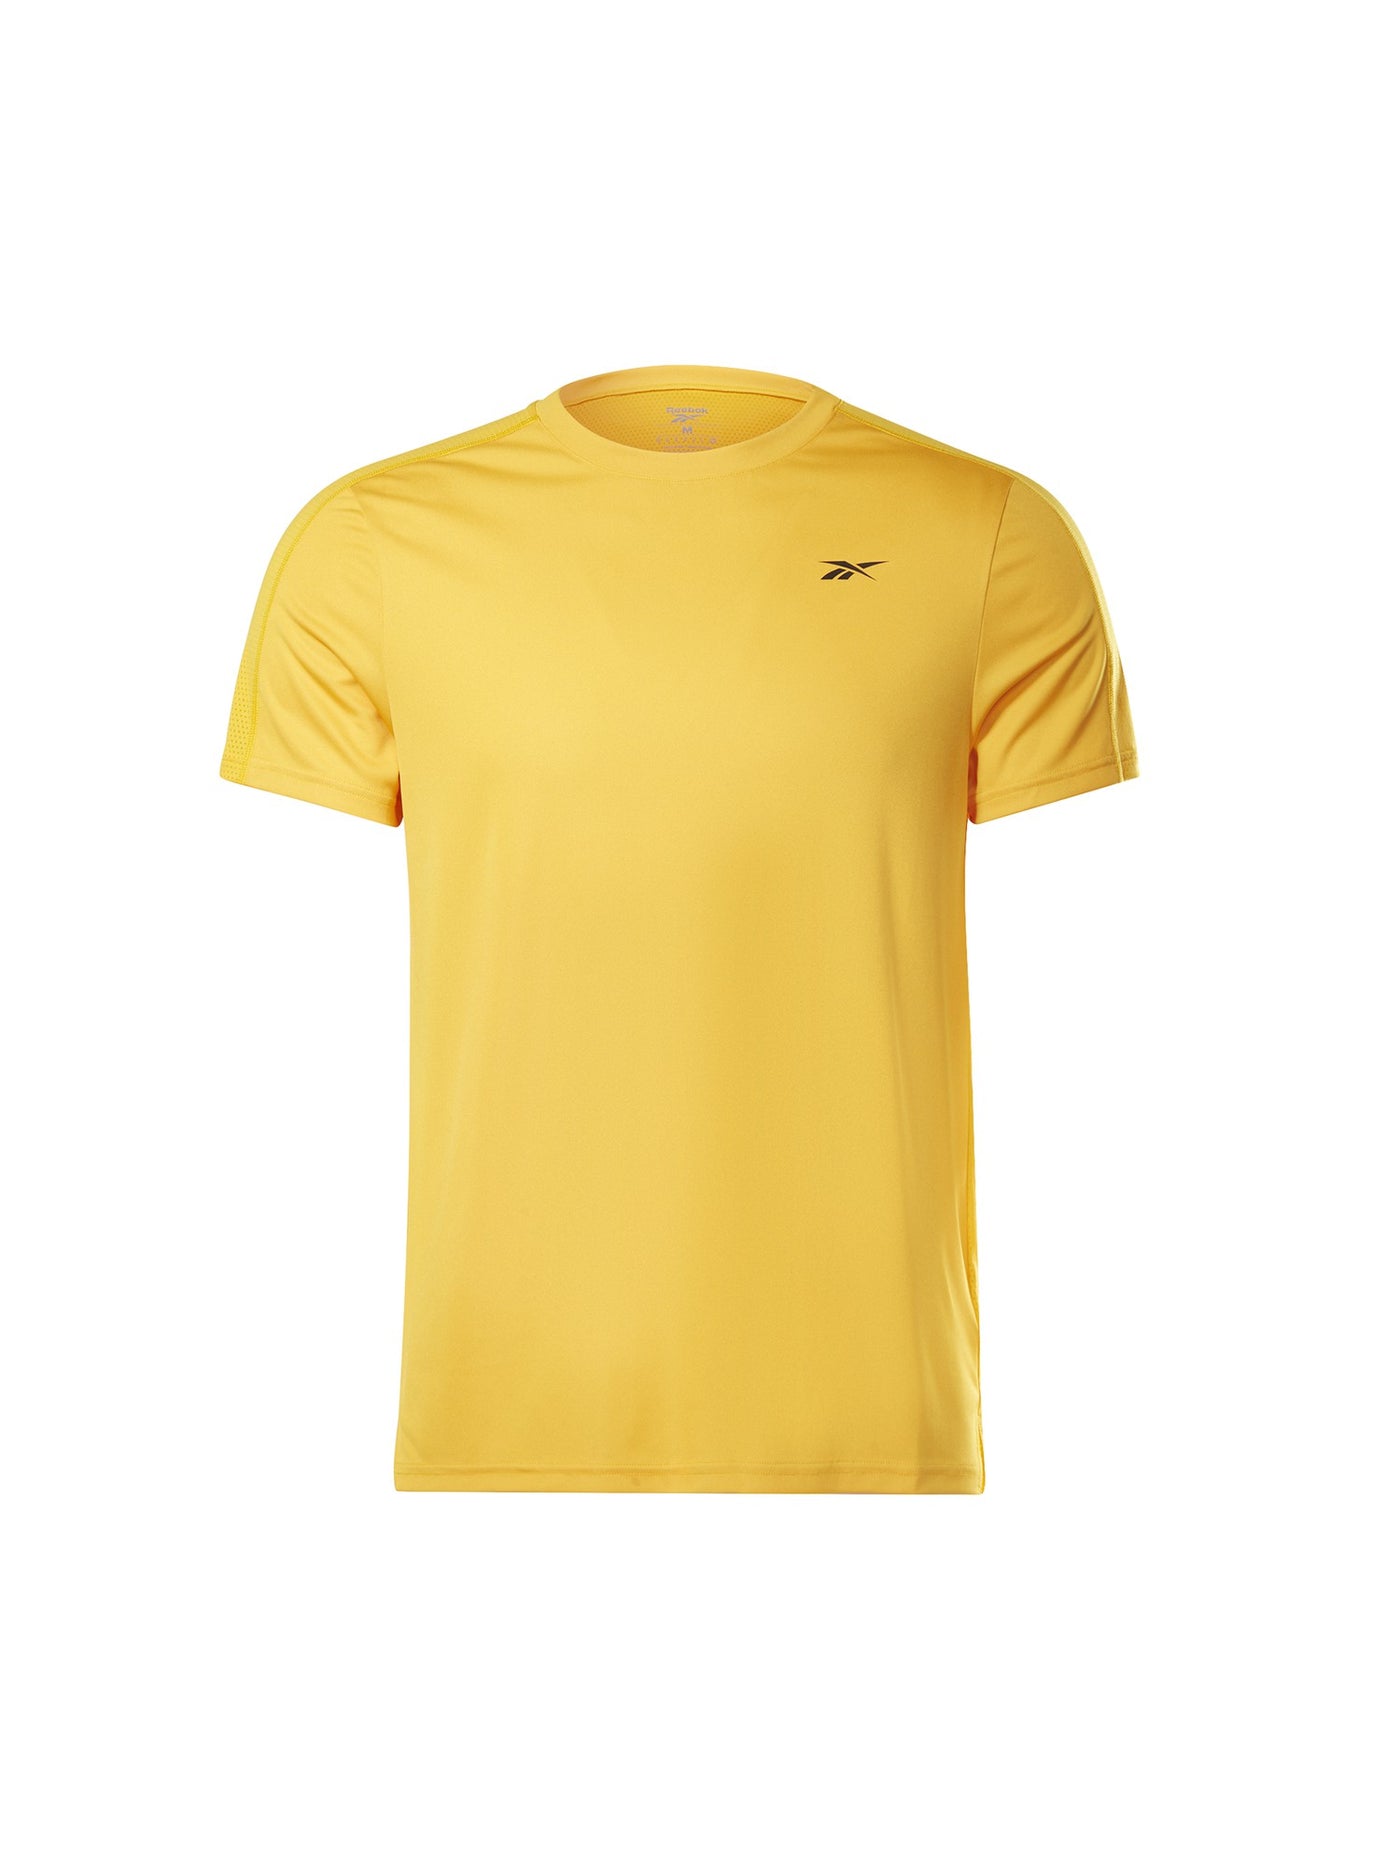 Reebok Mens Workout Ready Tech T-Shirt - GT5756